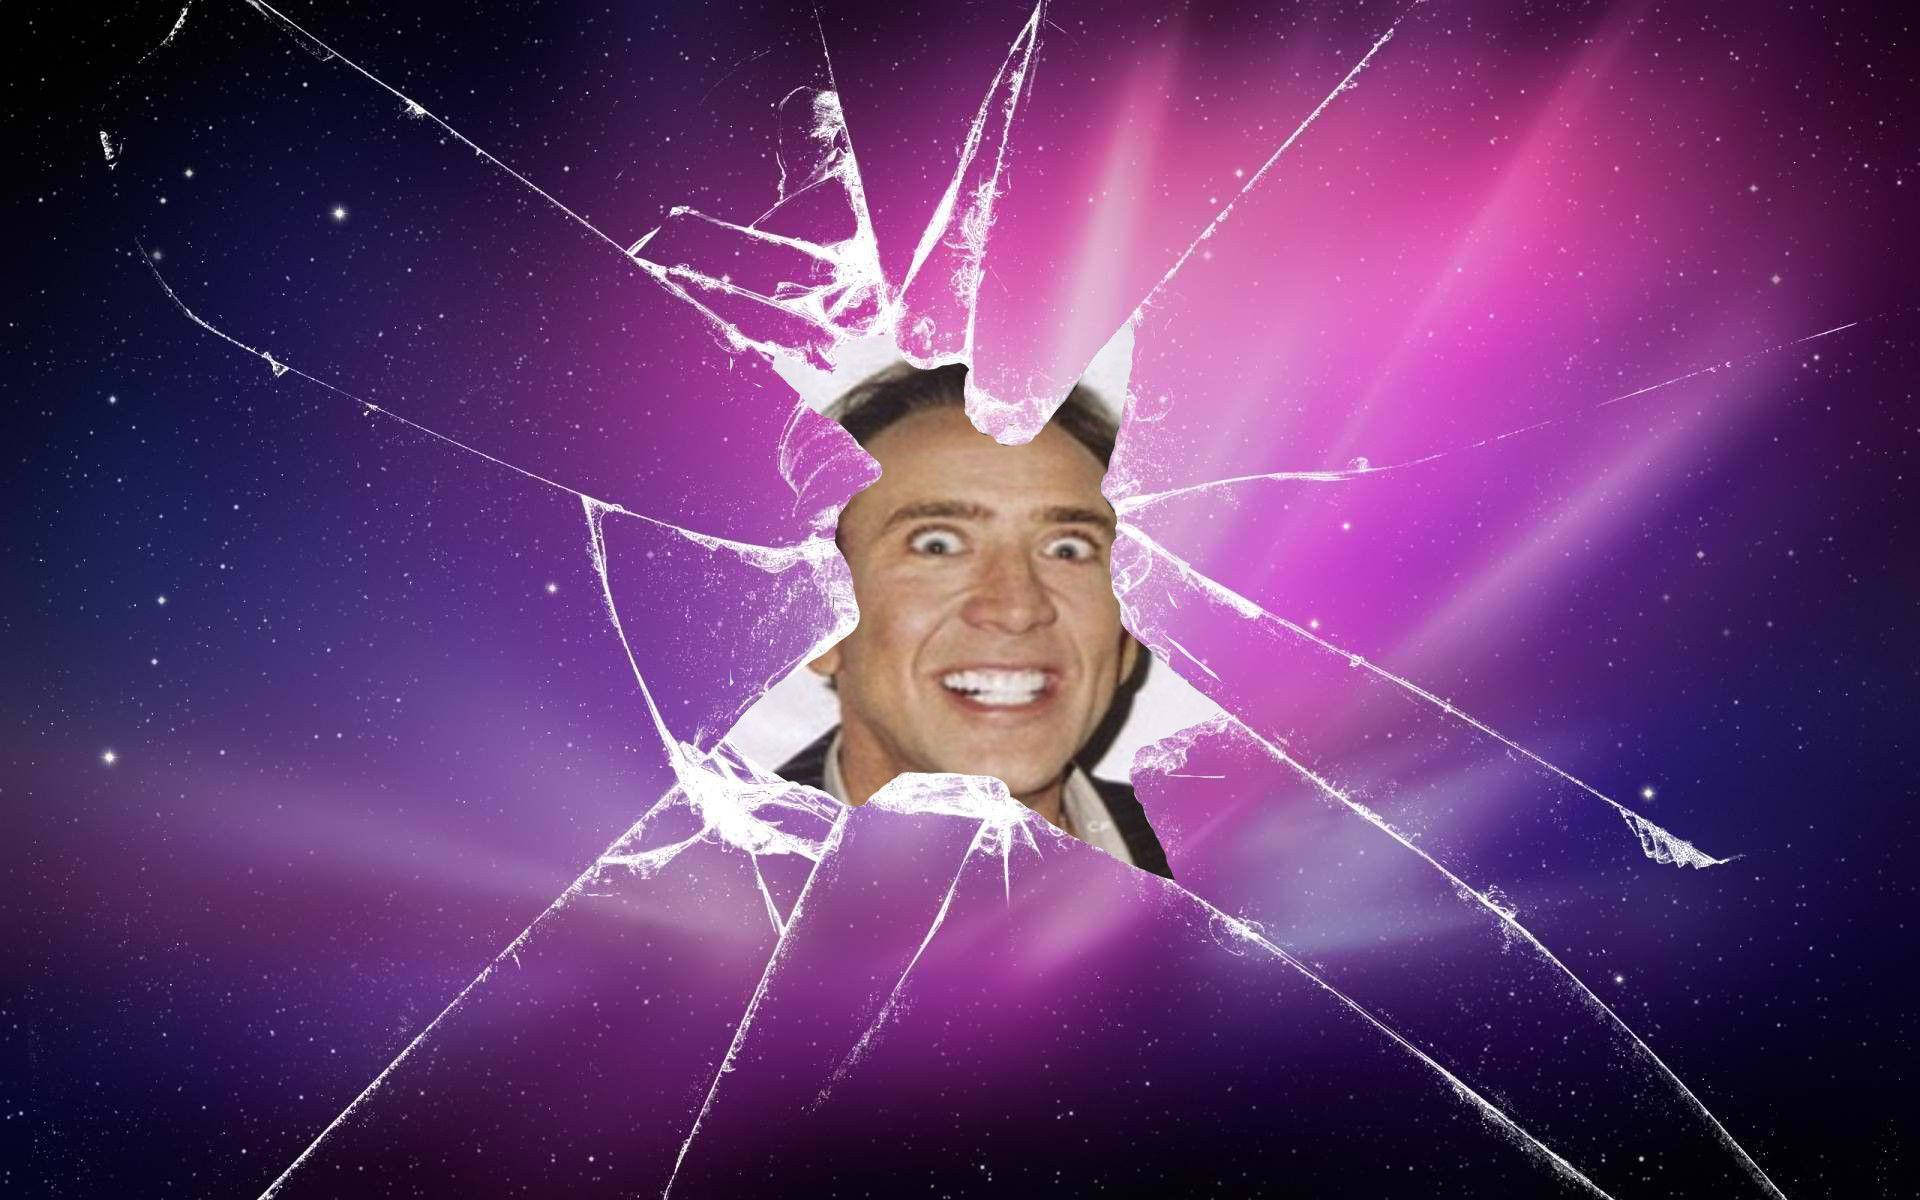 Papel De Parede Gradiente Da Galáxia Com Meme Do Nicolas Cage. Papel de Parede